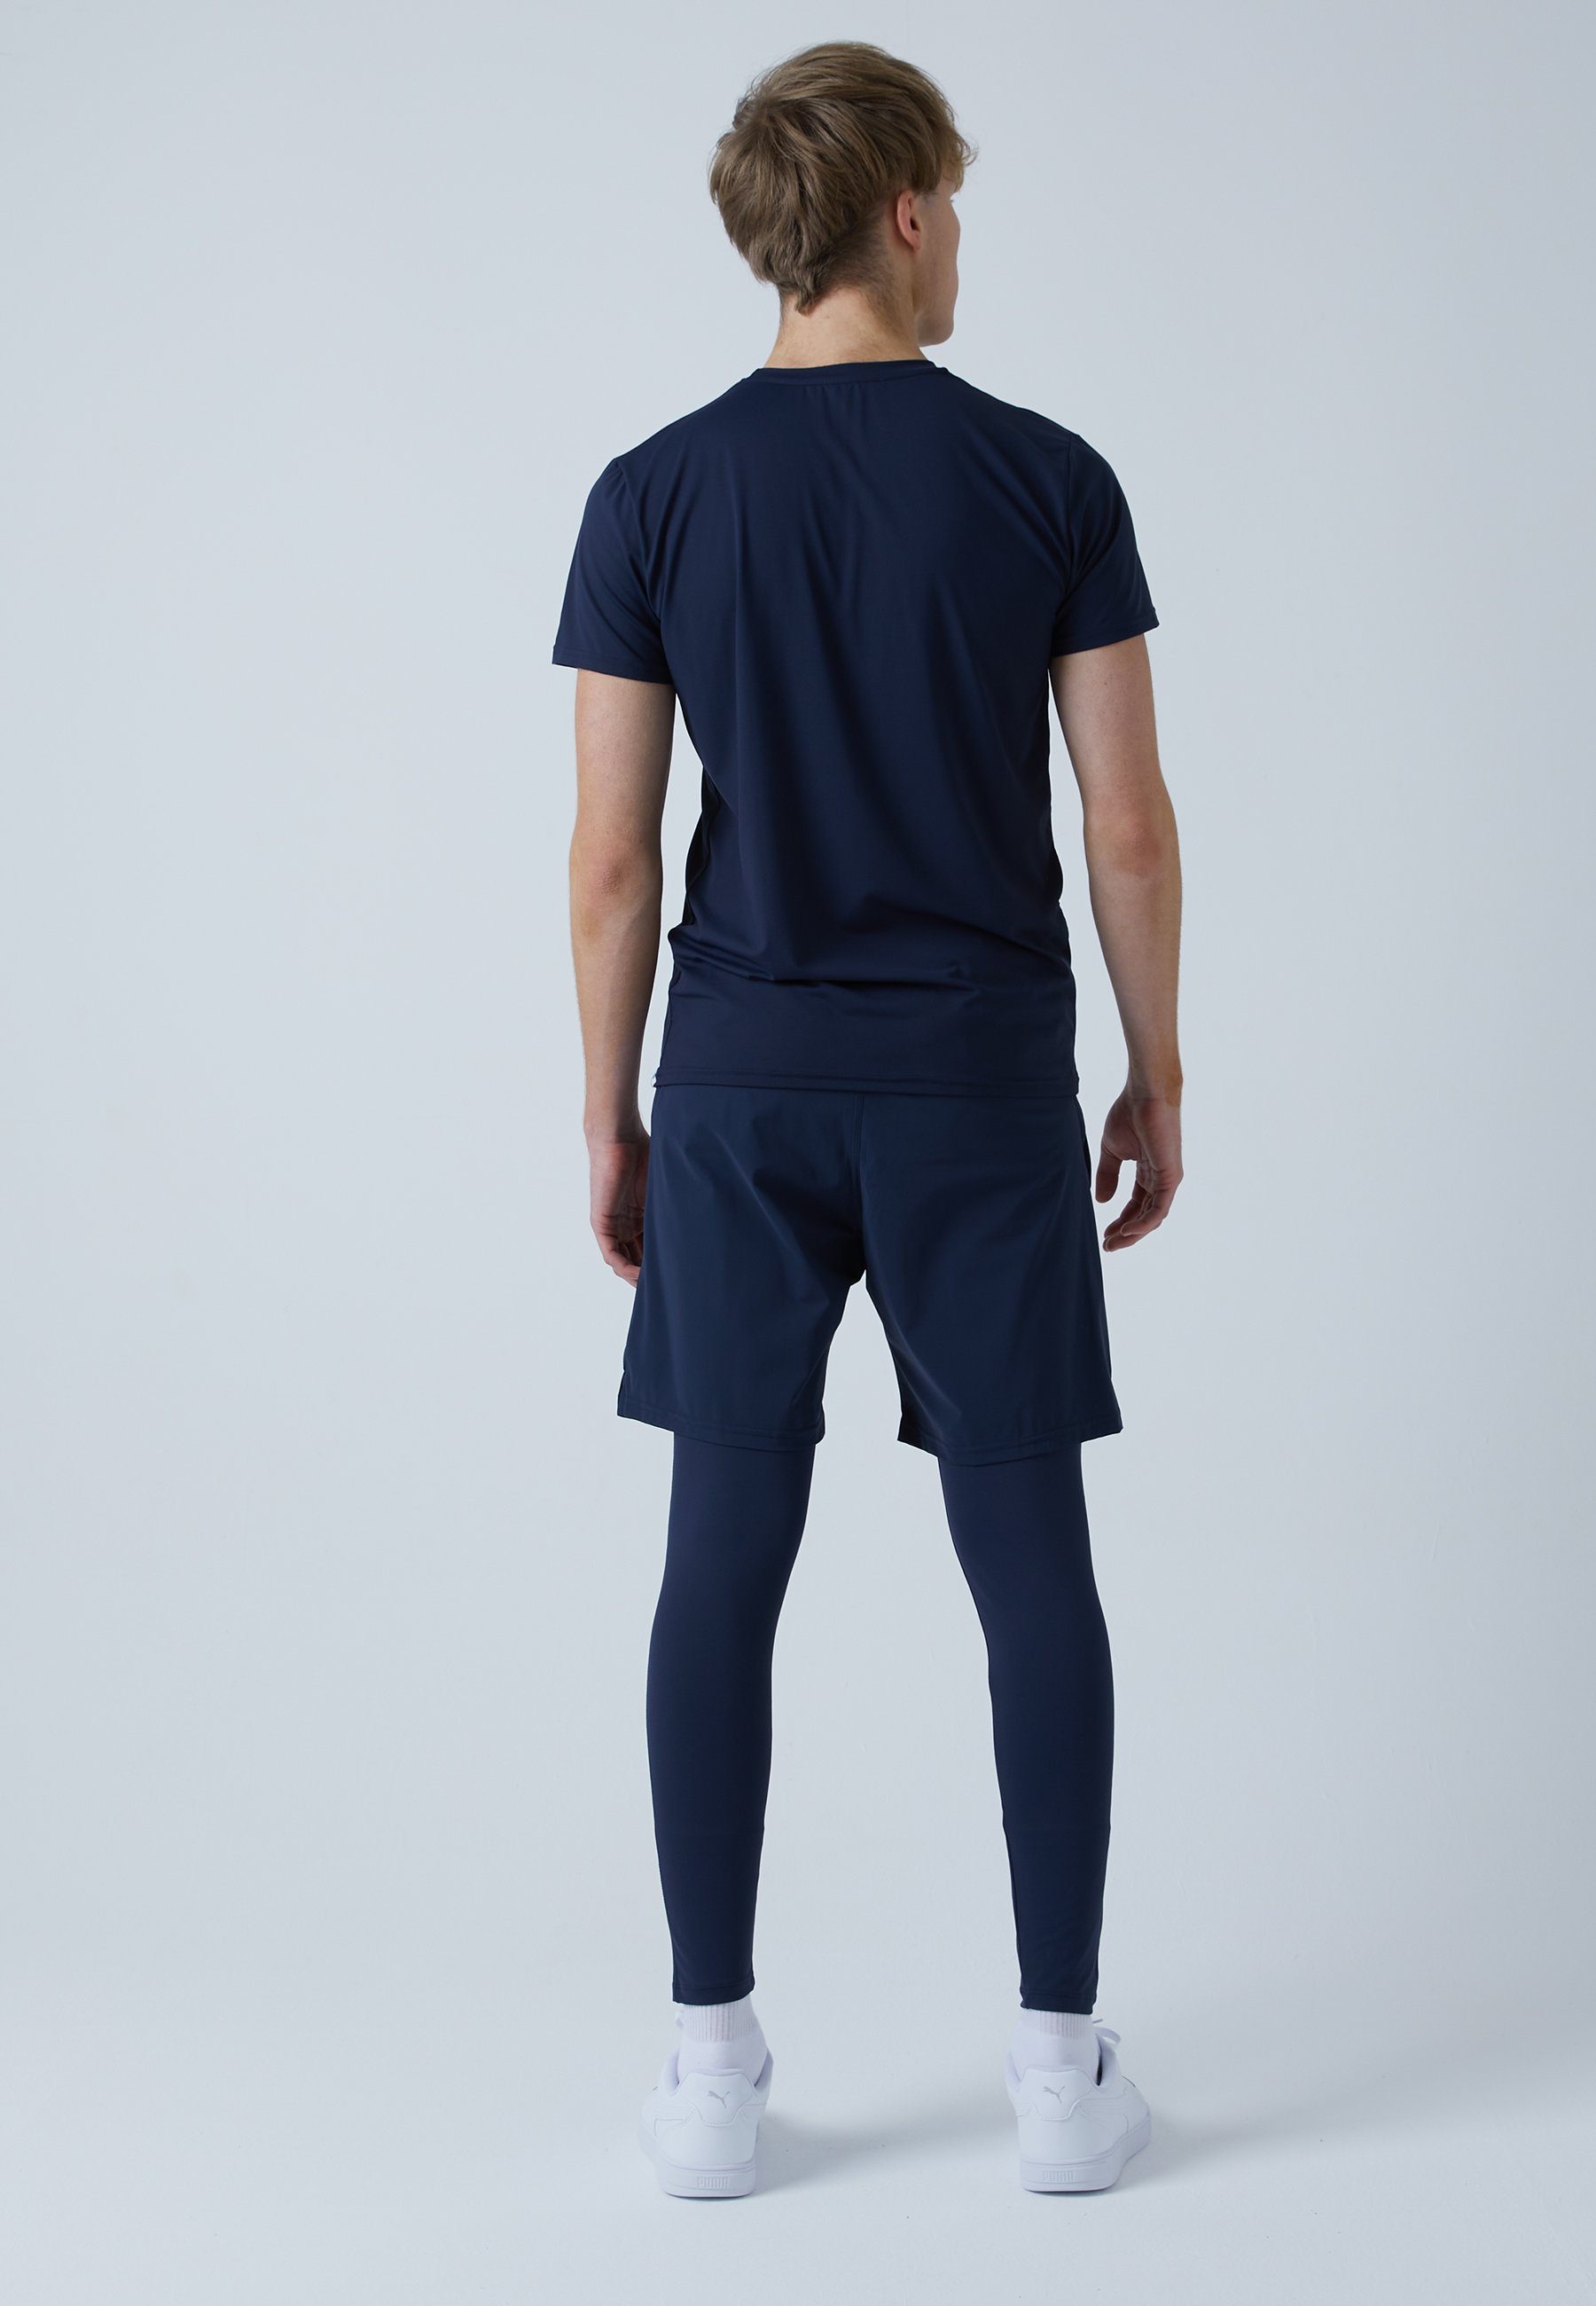 SPORTKIND & Herren 2-in-1 Leggings Jungen navy Sporthose mit Shorts blau